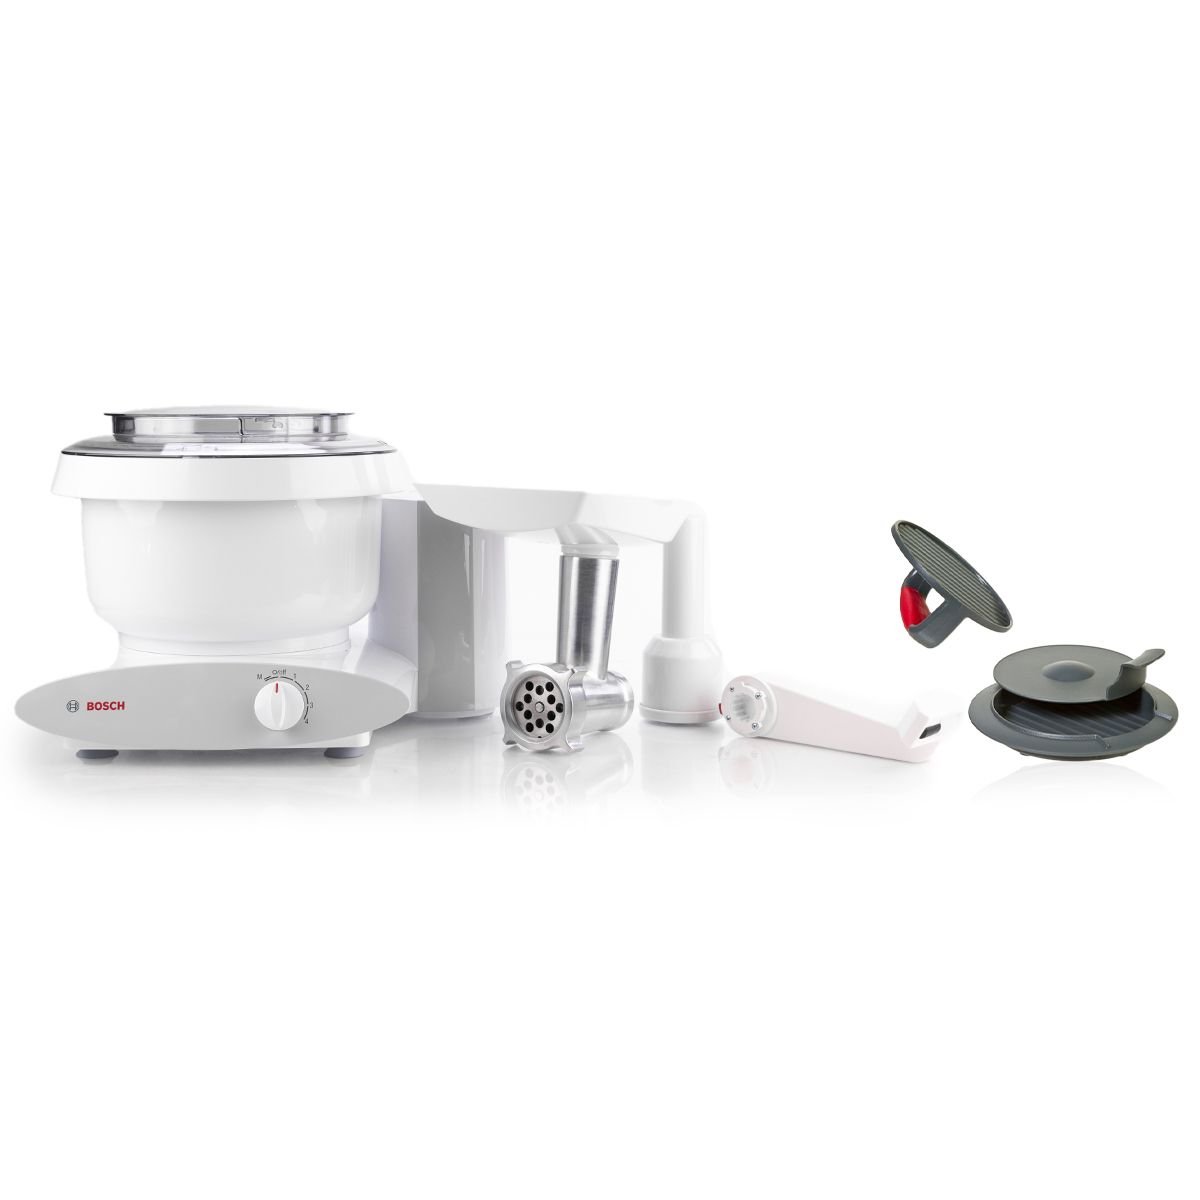 Universal Plus Mixer Slicer/Shredder Attachment | Bosch | Everything Kitchens